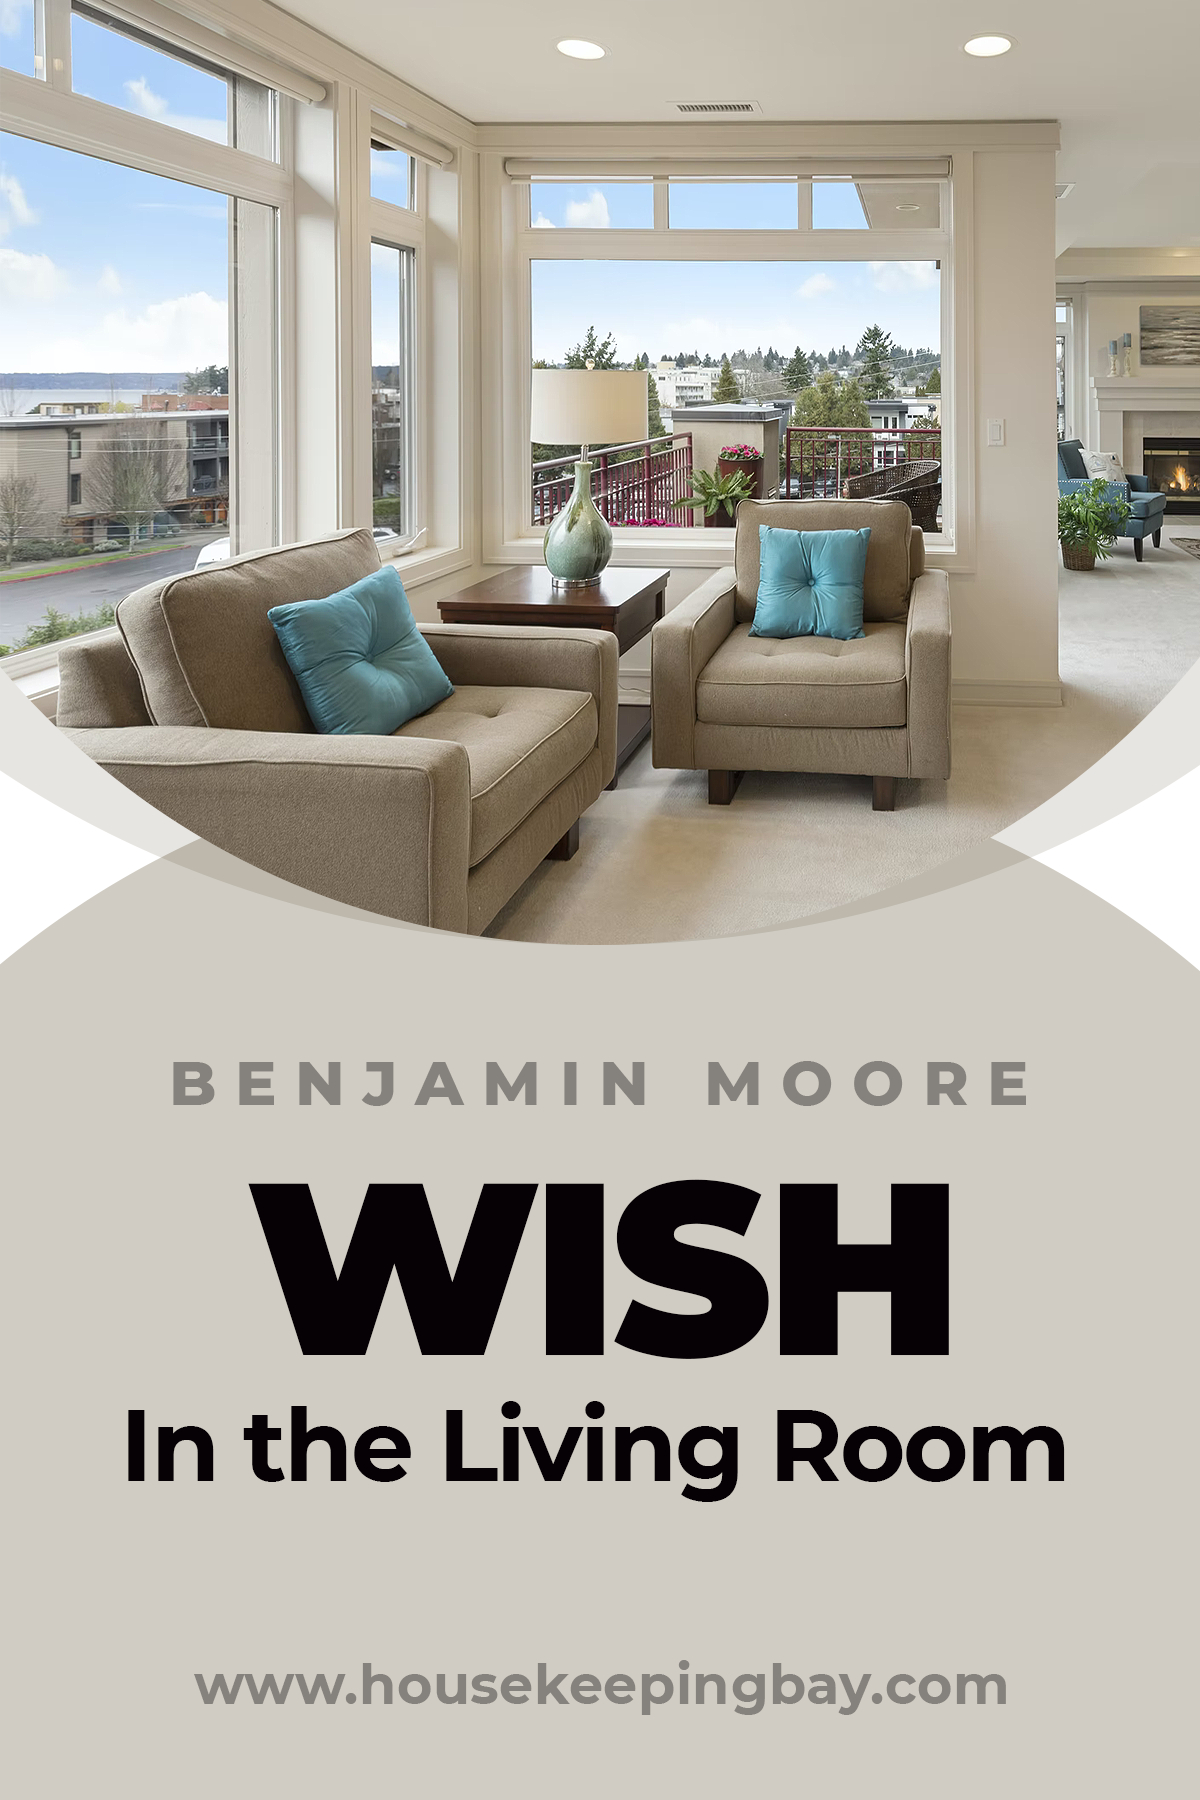 Benjamin Moore Wish In the Living Room